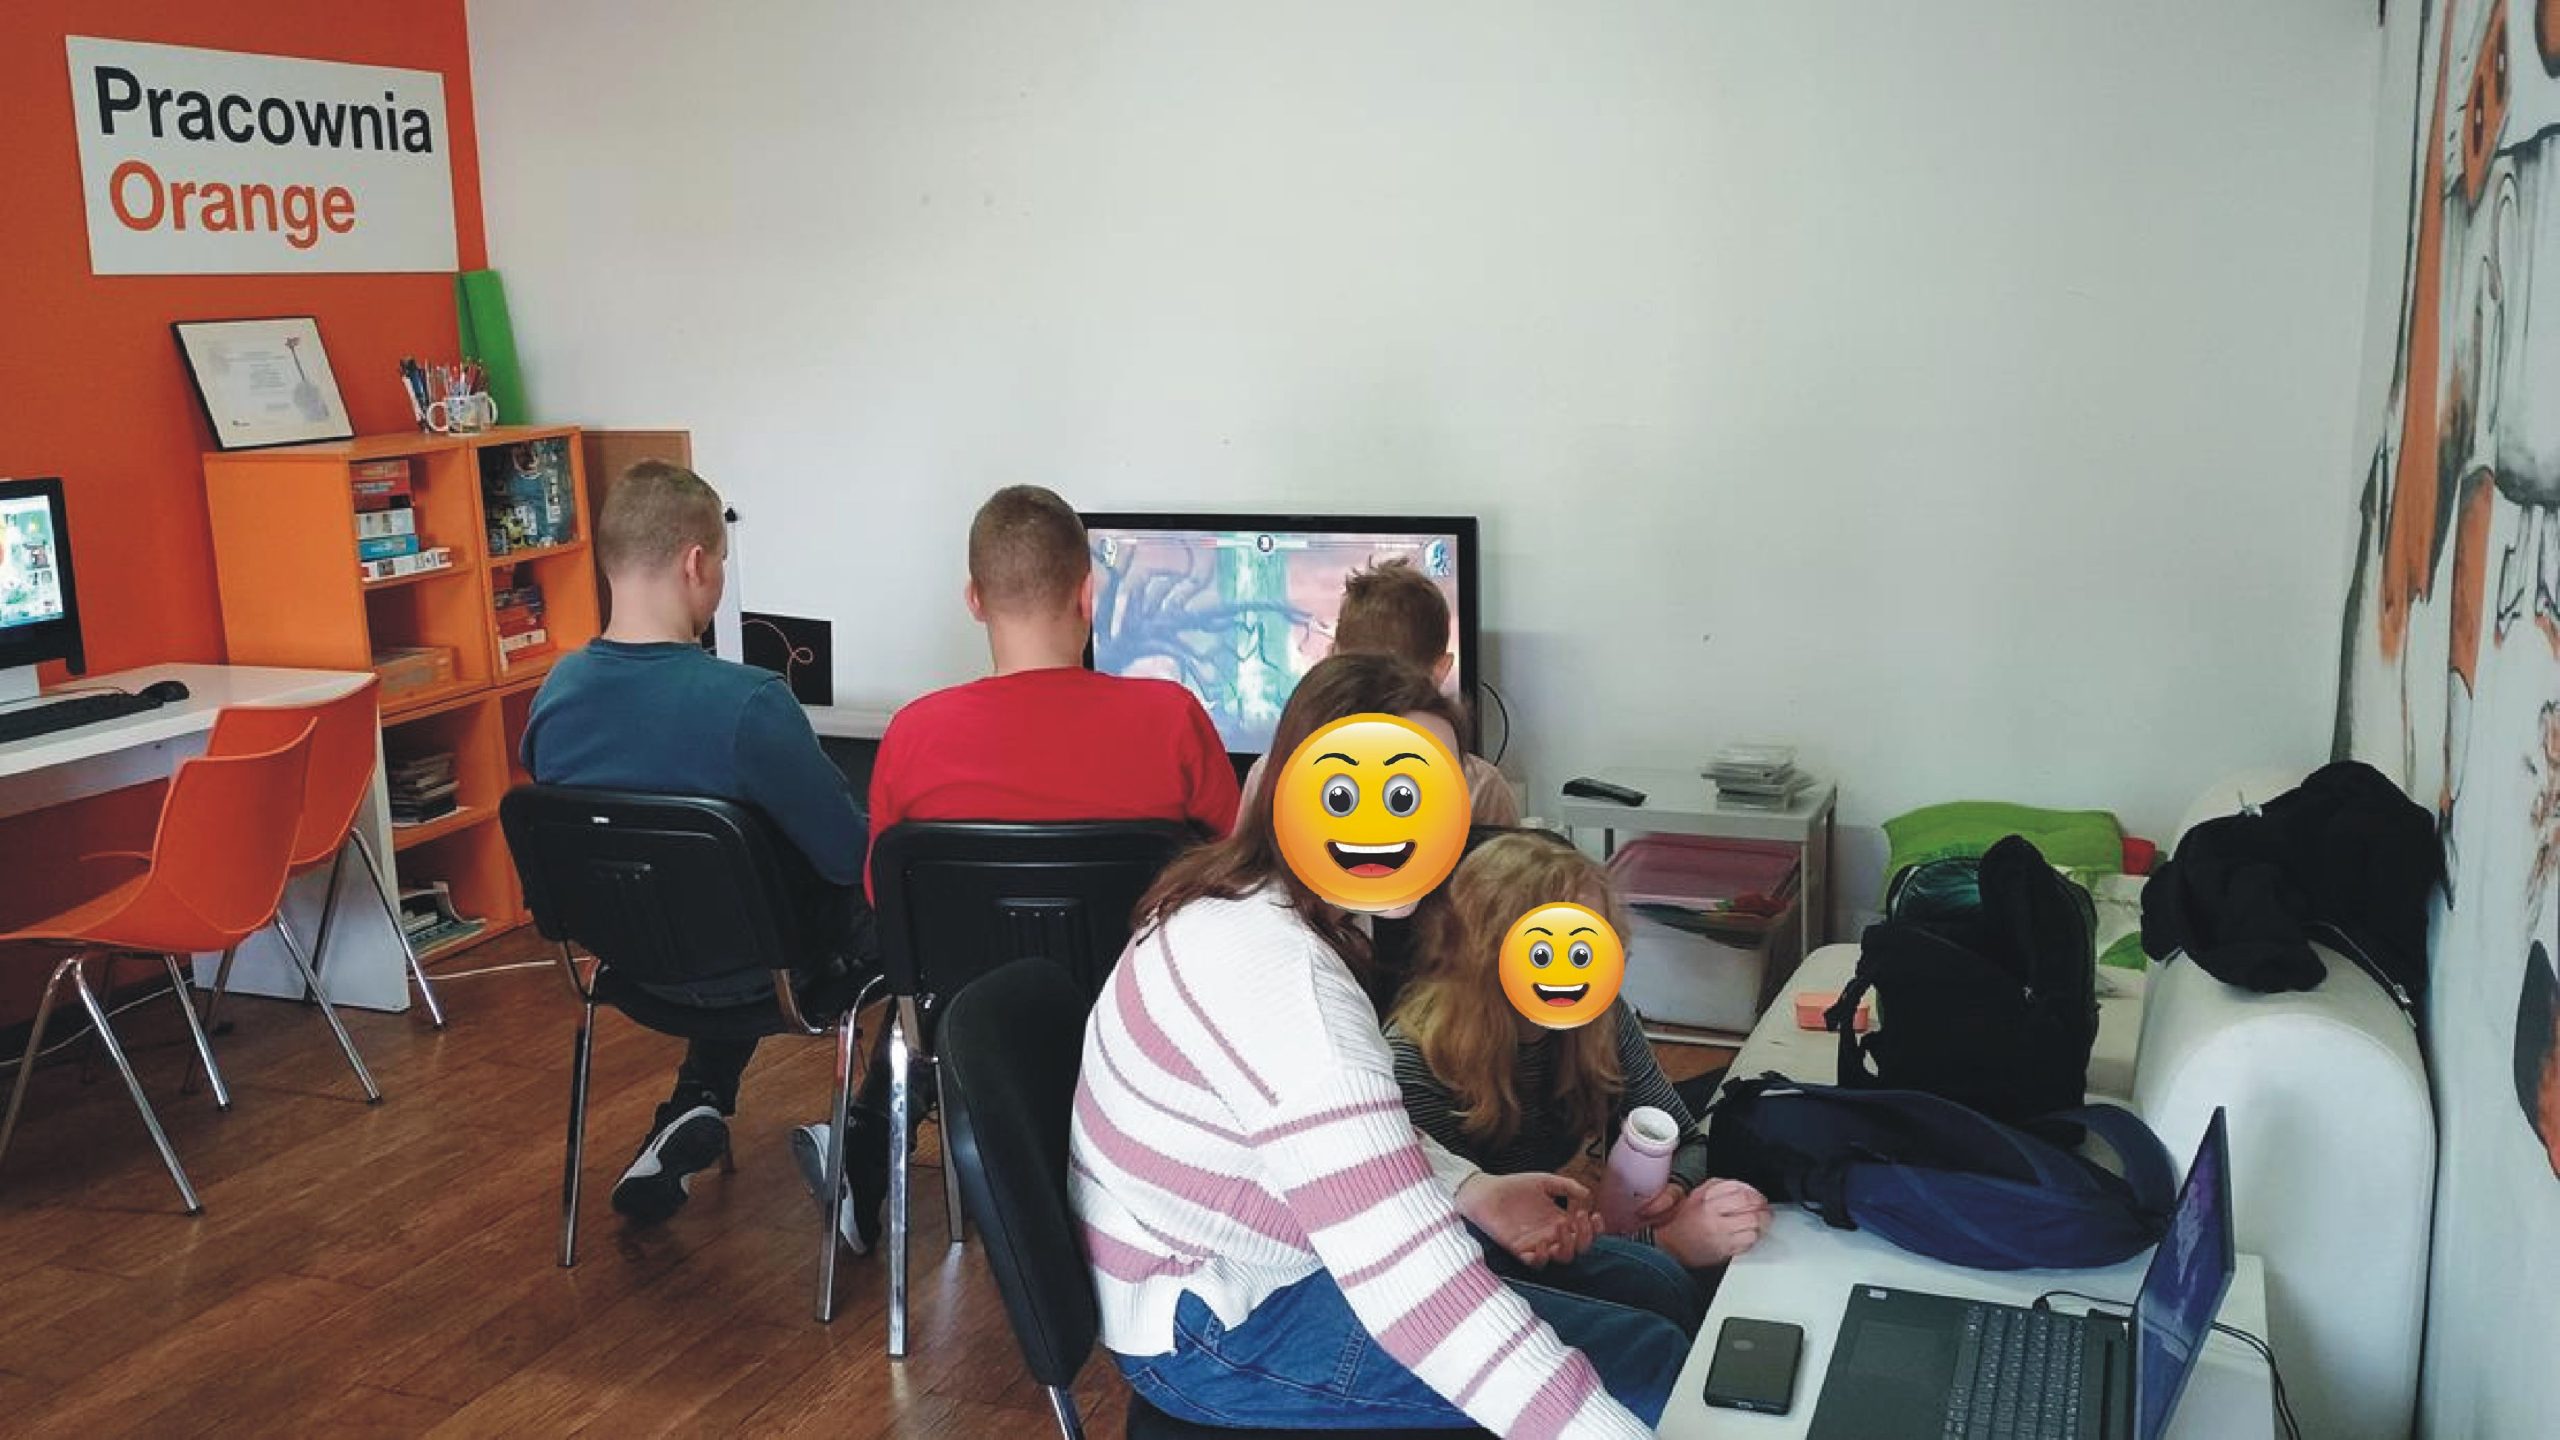 zdjęcie z wnętrza pracowni orange, młodzież gra w grę na playstation, obok dwie osoby oglądają cos na laptopie